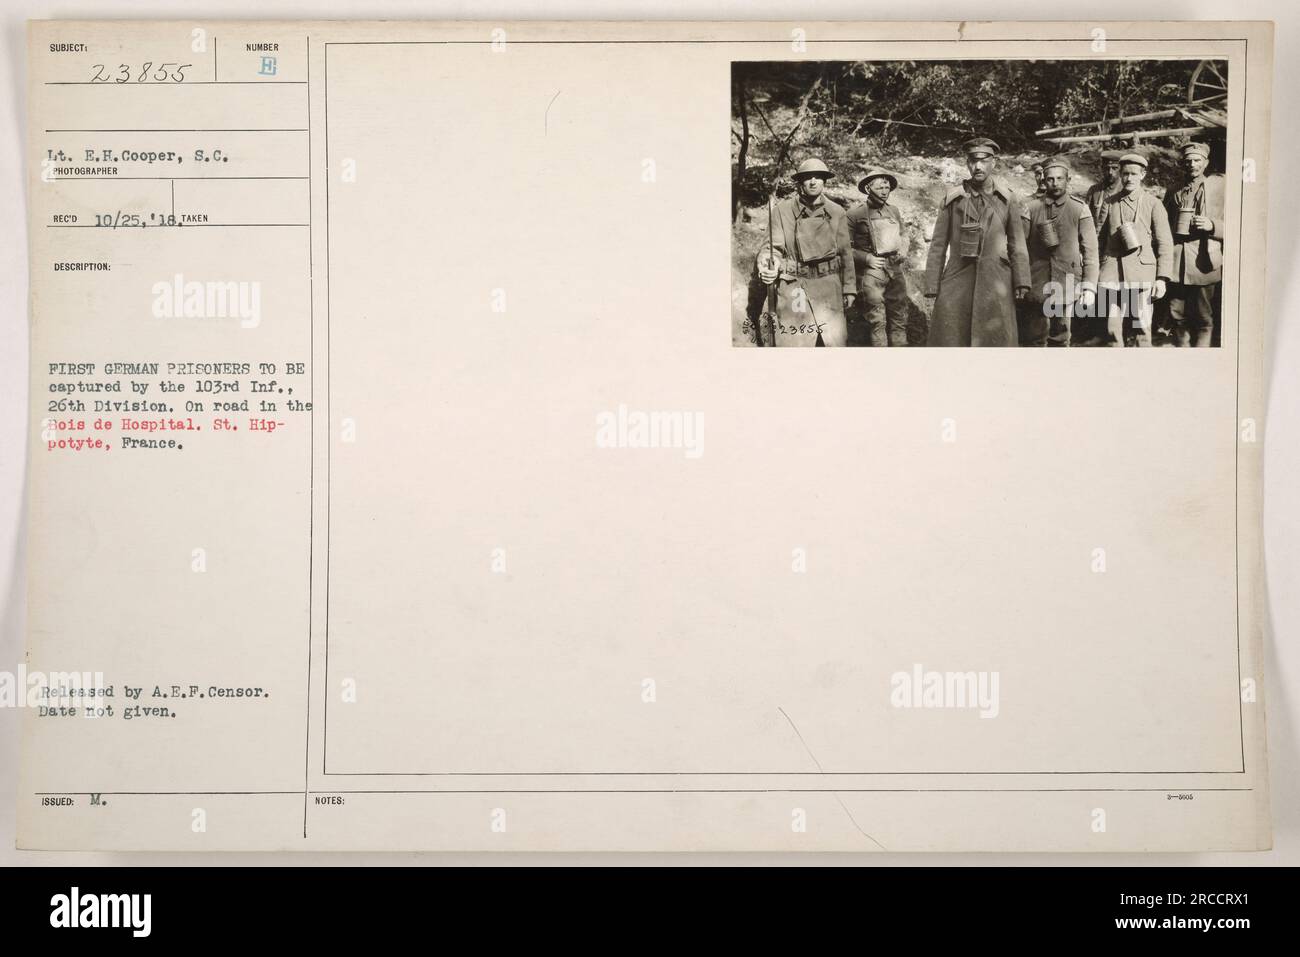 Prigionieri tedeschi catturati dal 103° Fanteria della 26a Divisione nel Bois de Hospital, St. Hip-potyte, Francia durante la prima guerra mondiale. La foto è stata scattata dal tenente E.H. Cooper, S.C. e rilasciato da A.E.P. Censor. La data della cattura è sconosciuta. Foto Stock